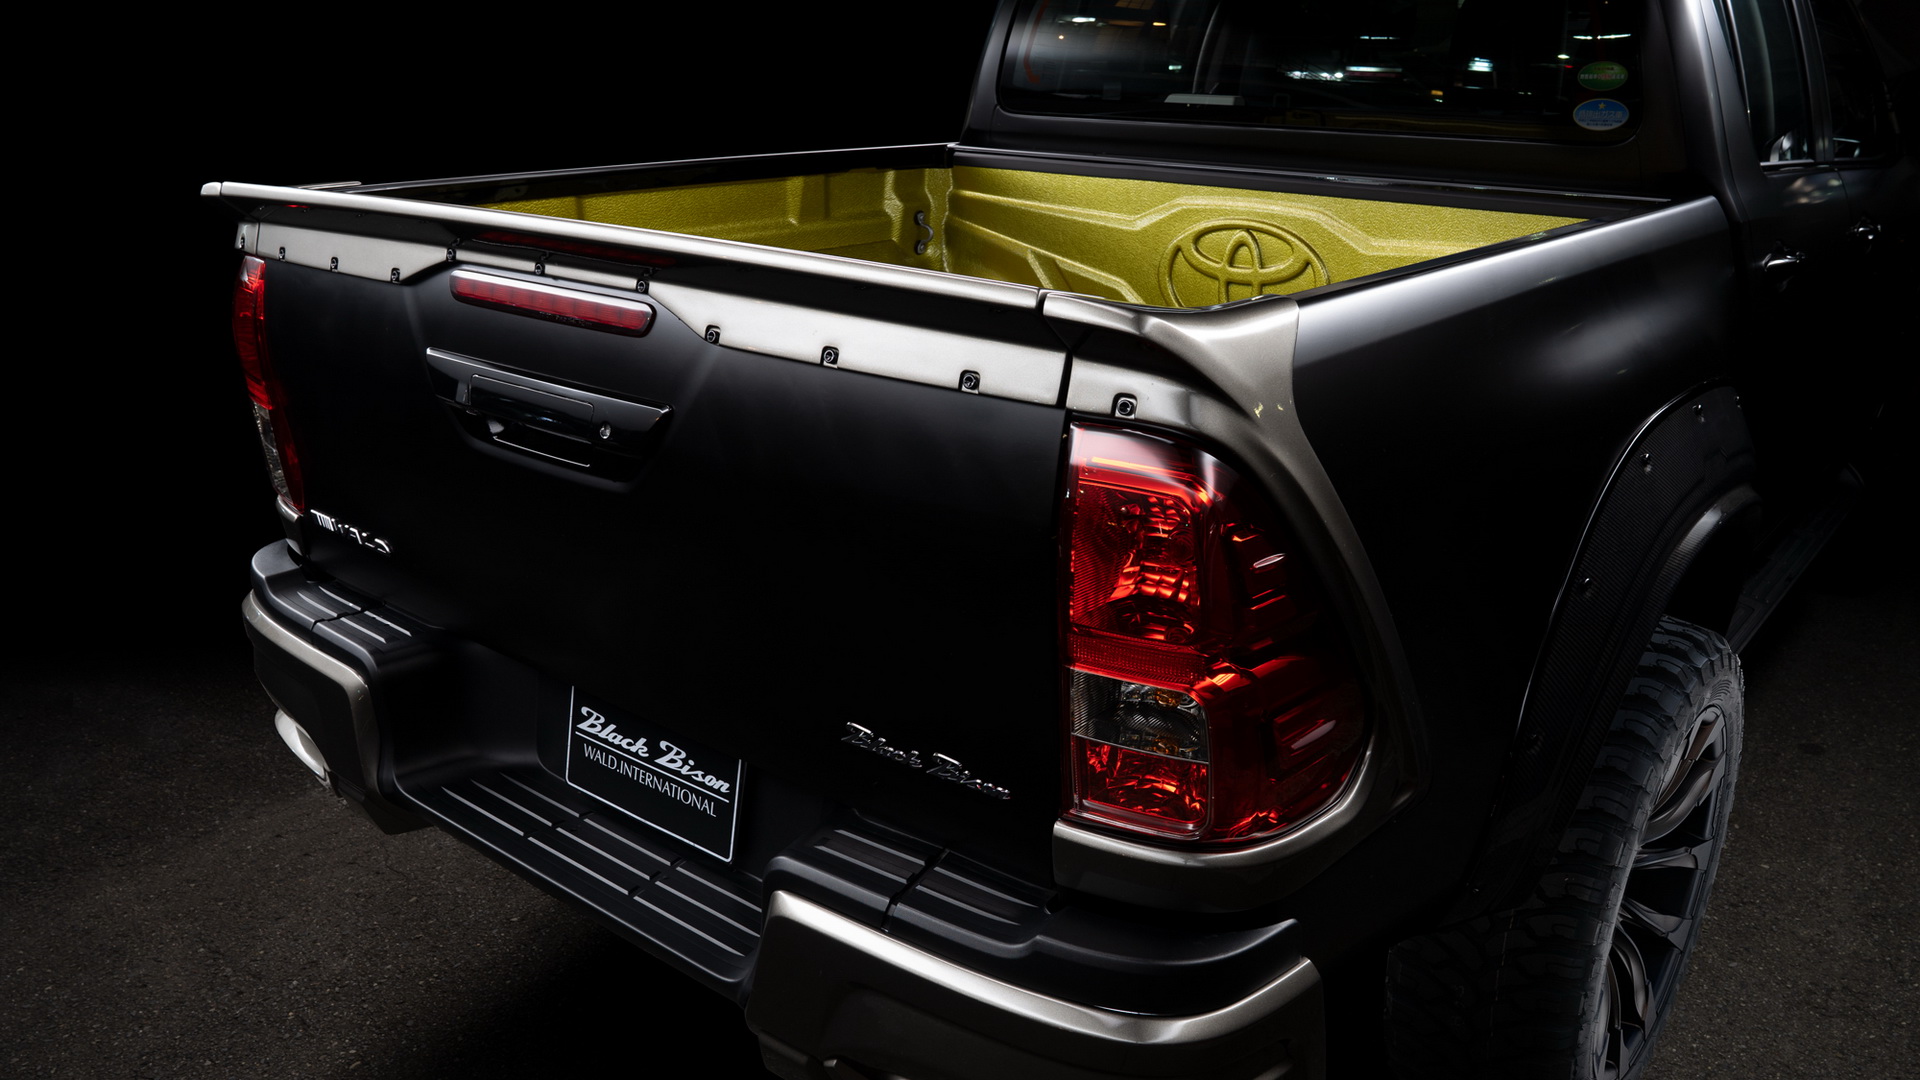 Toyota Hilux phiên bản độ 'Trâu Đen' nhìn như muốn 'ăn tươi nuốt sống' Ford Ranger